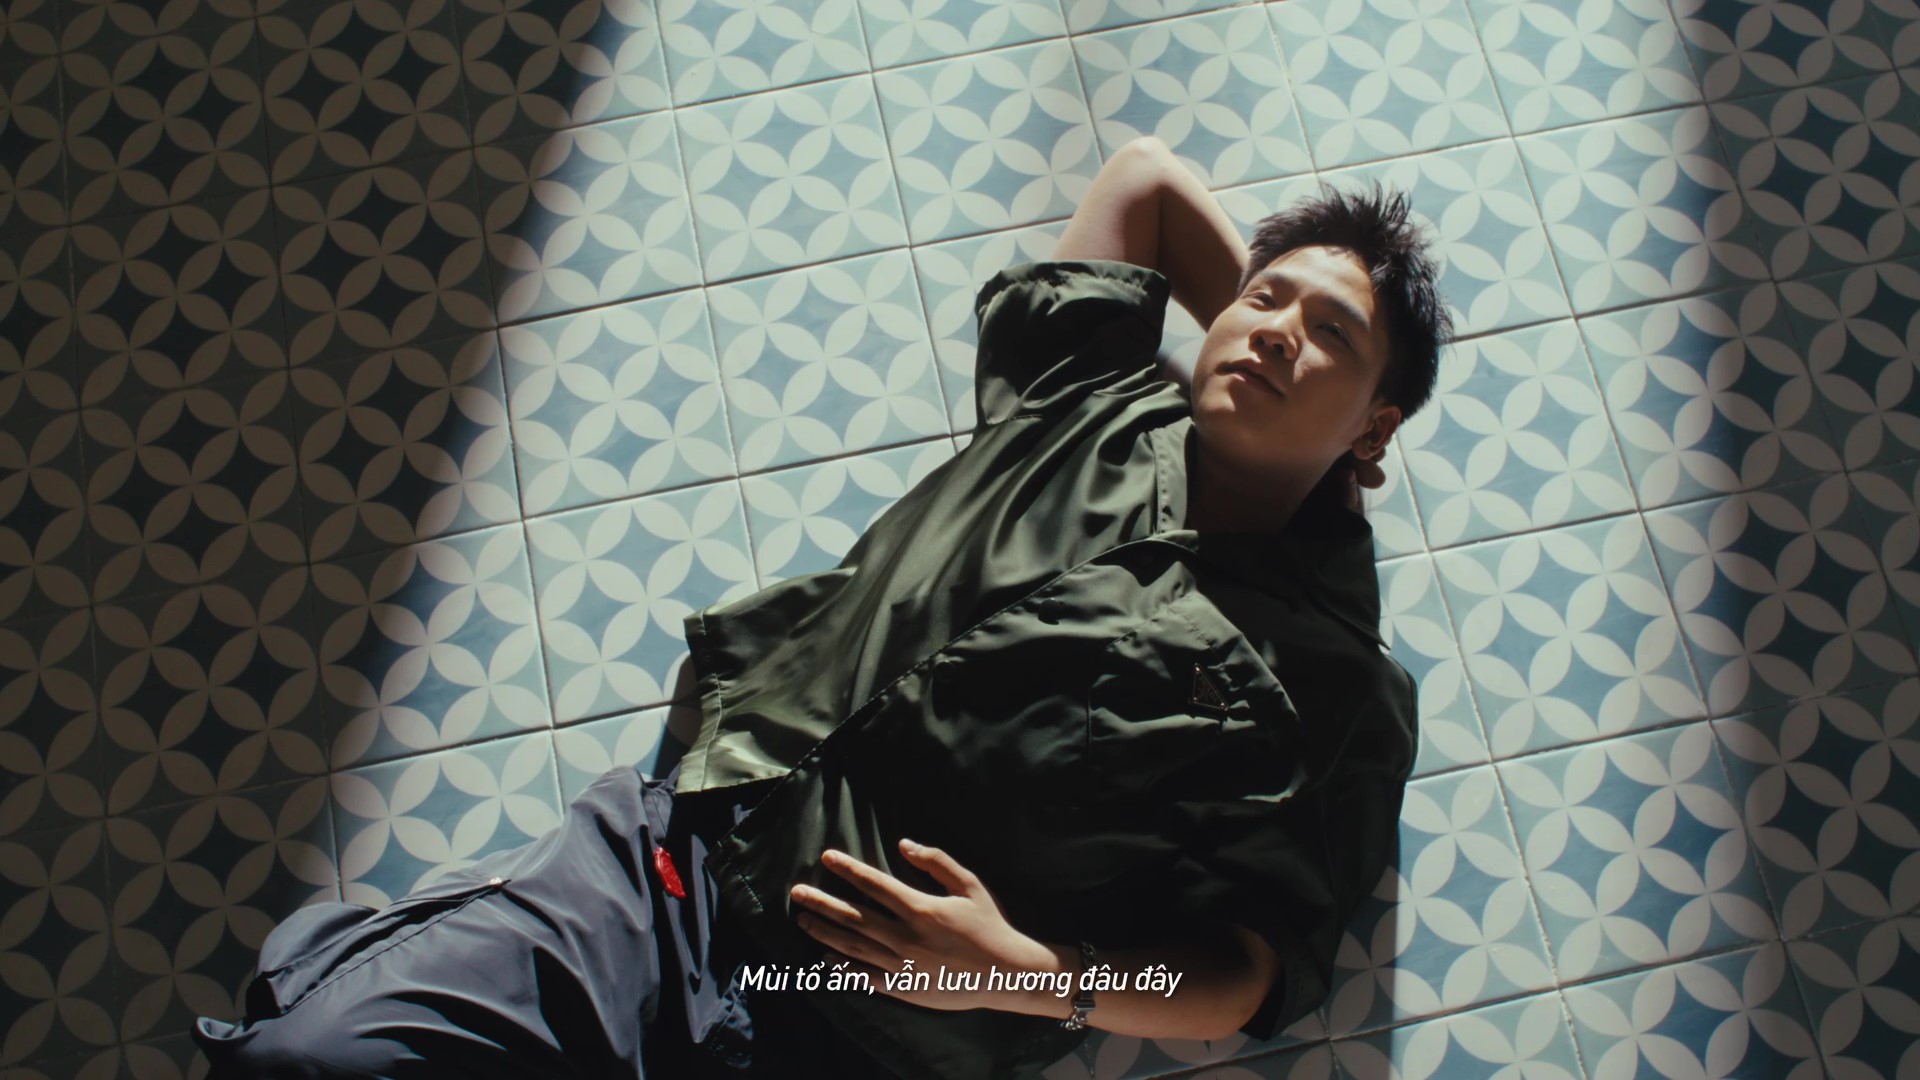 Quân A.P & Hứa Kim Tuyền đưa mùi tổ ấm vào MV mới ra mắt - Ảnh 6.